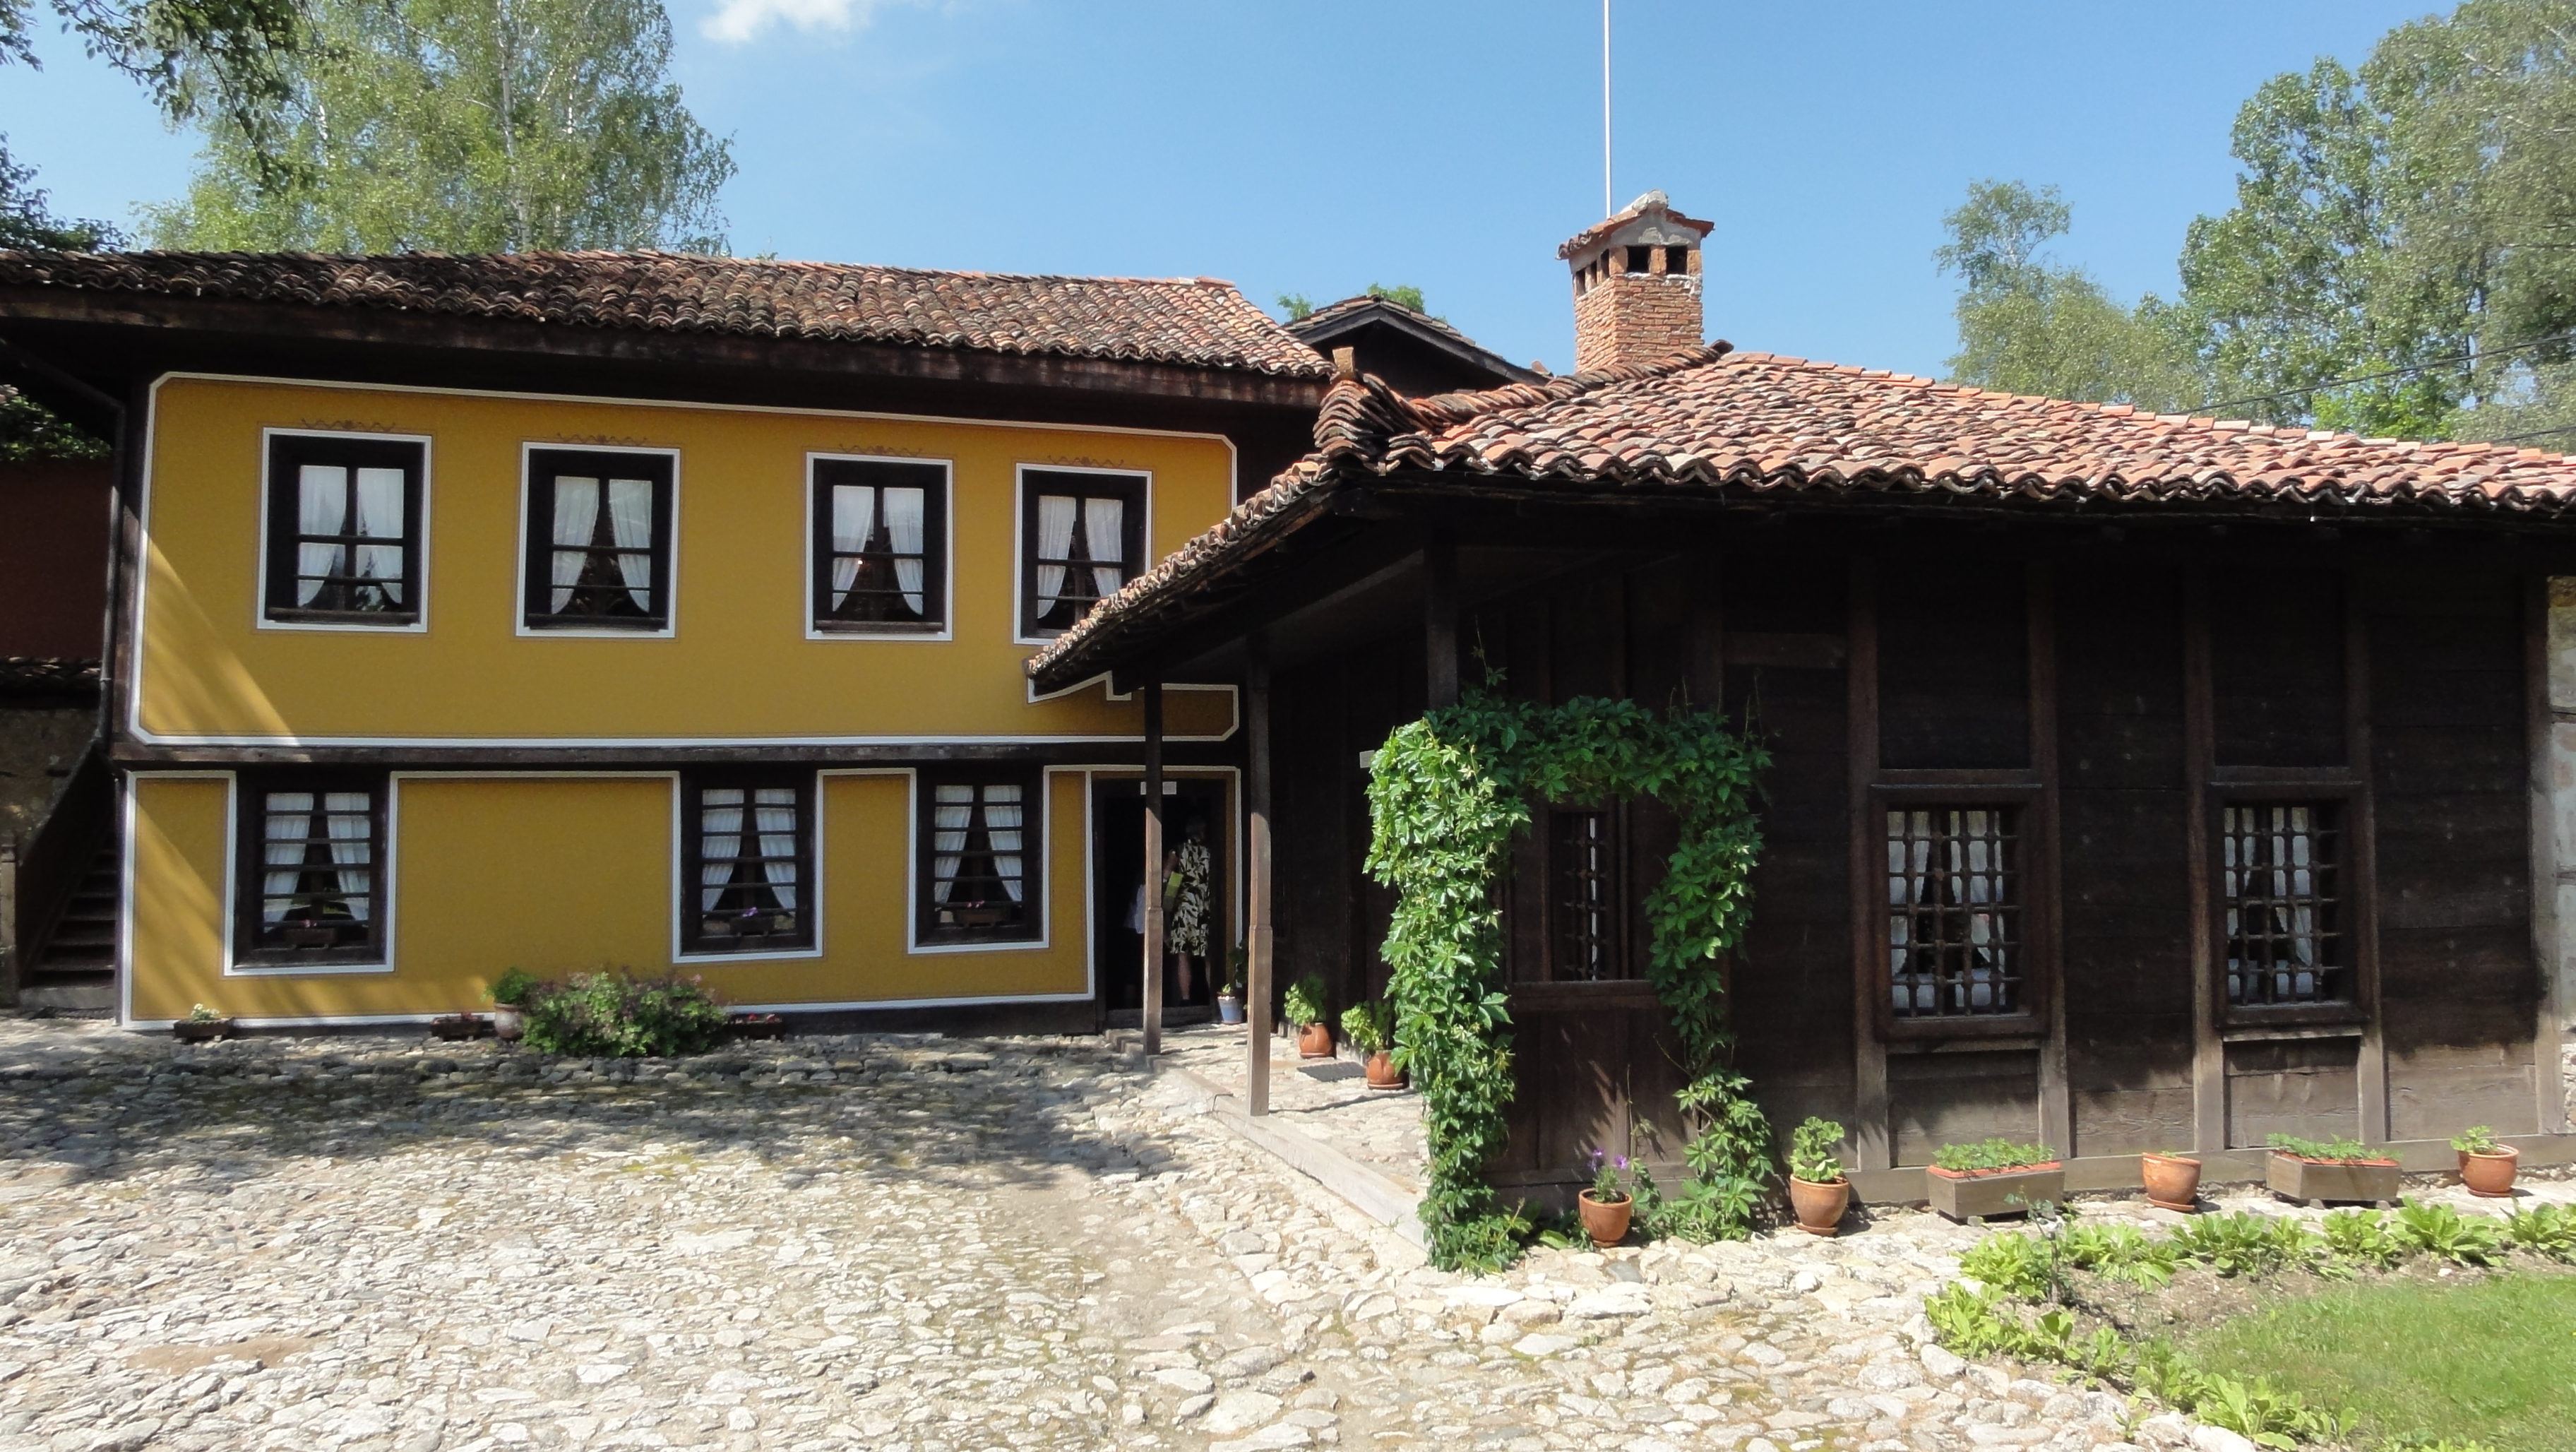 Koprivstica, Plovdiv und Veliko Tarnovo